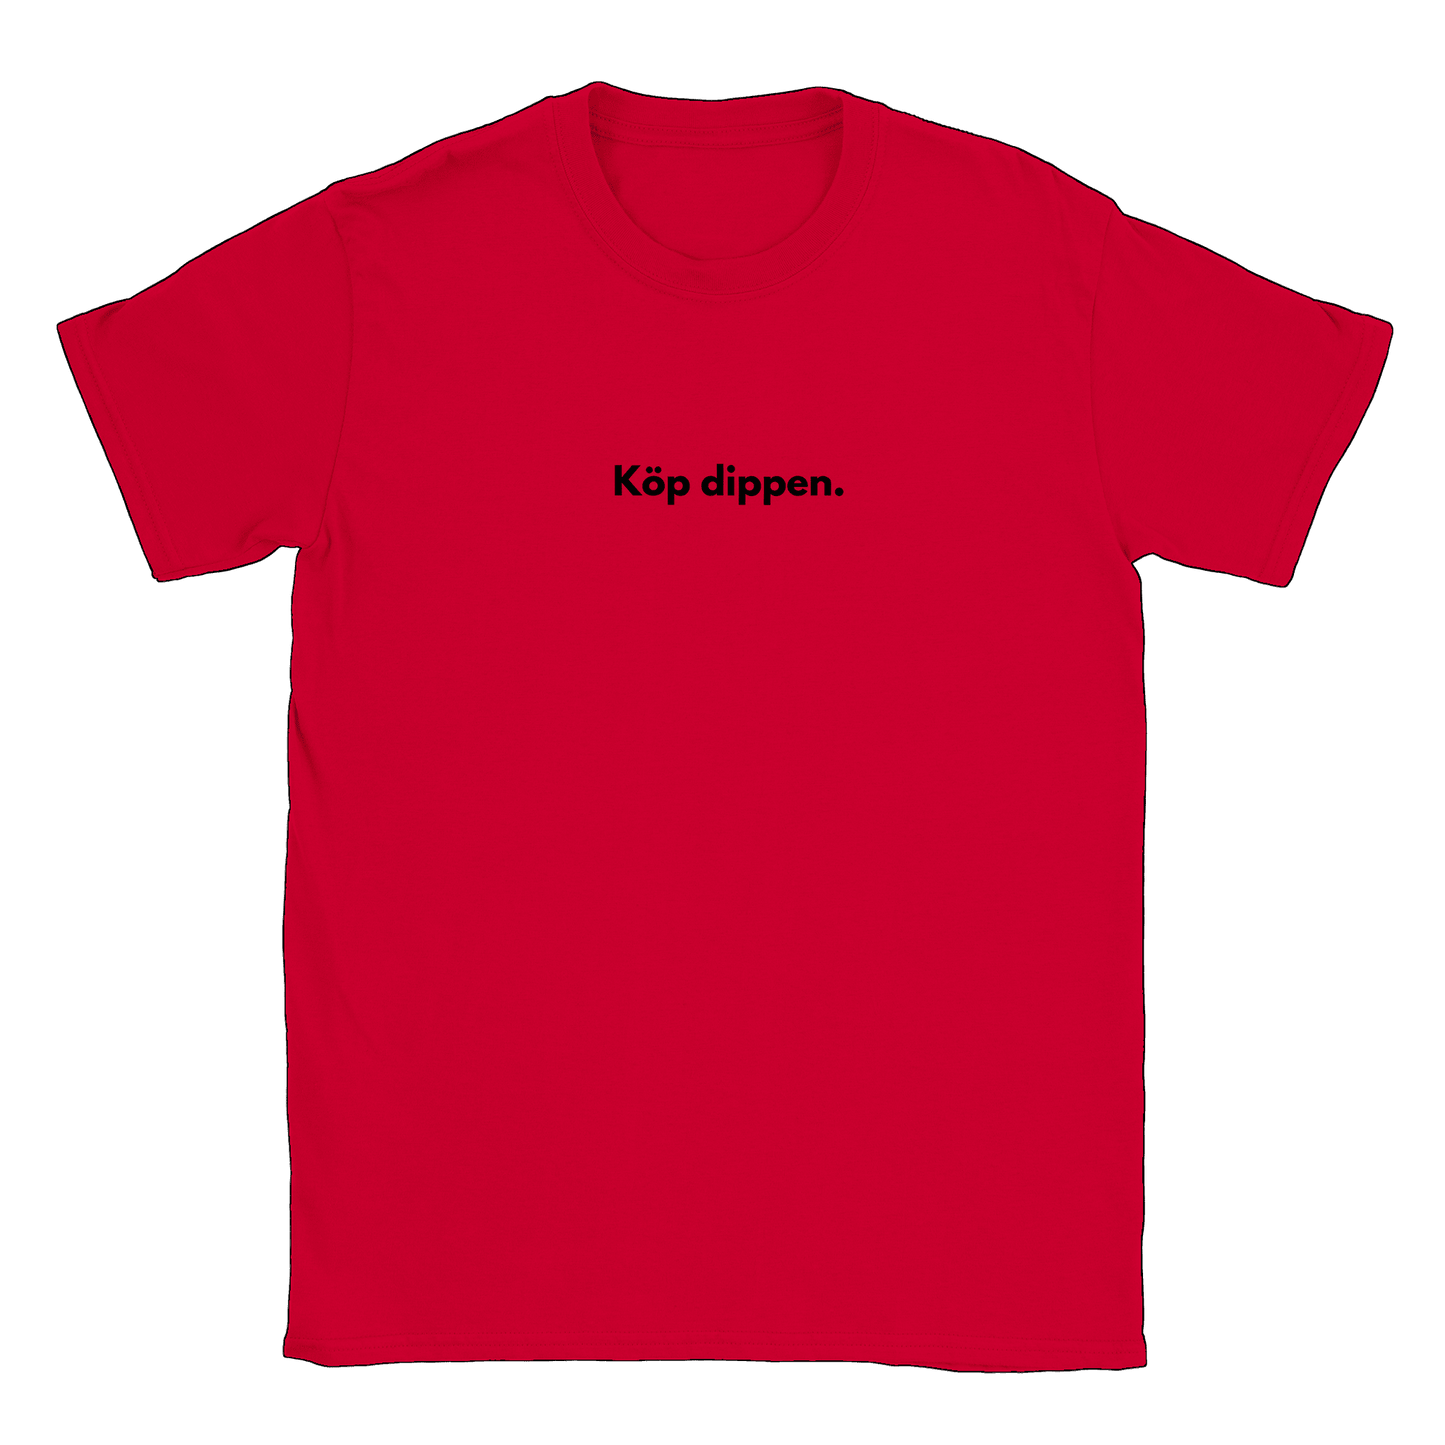 Köp dippen - T-shirt Röd